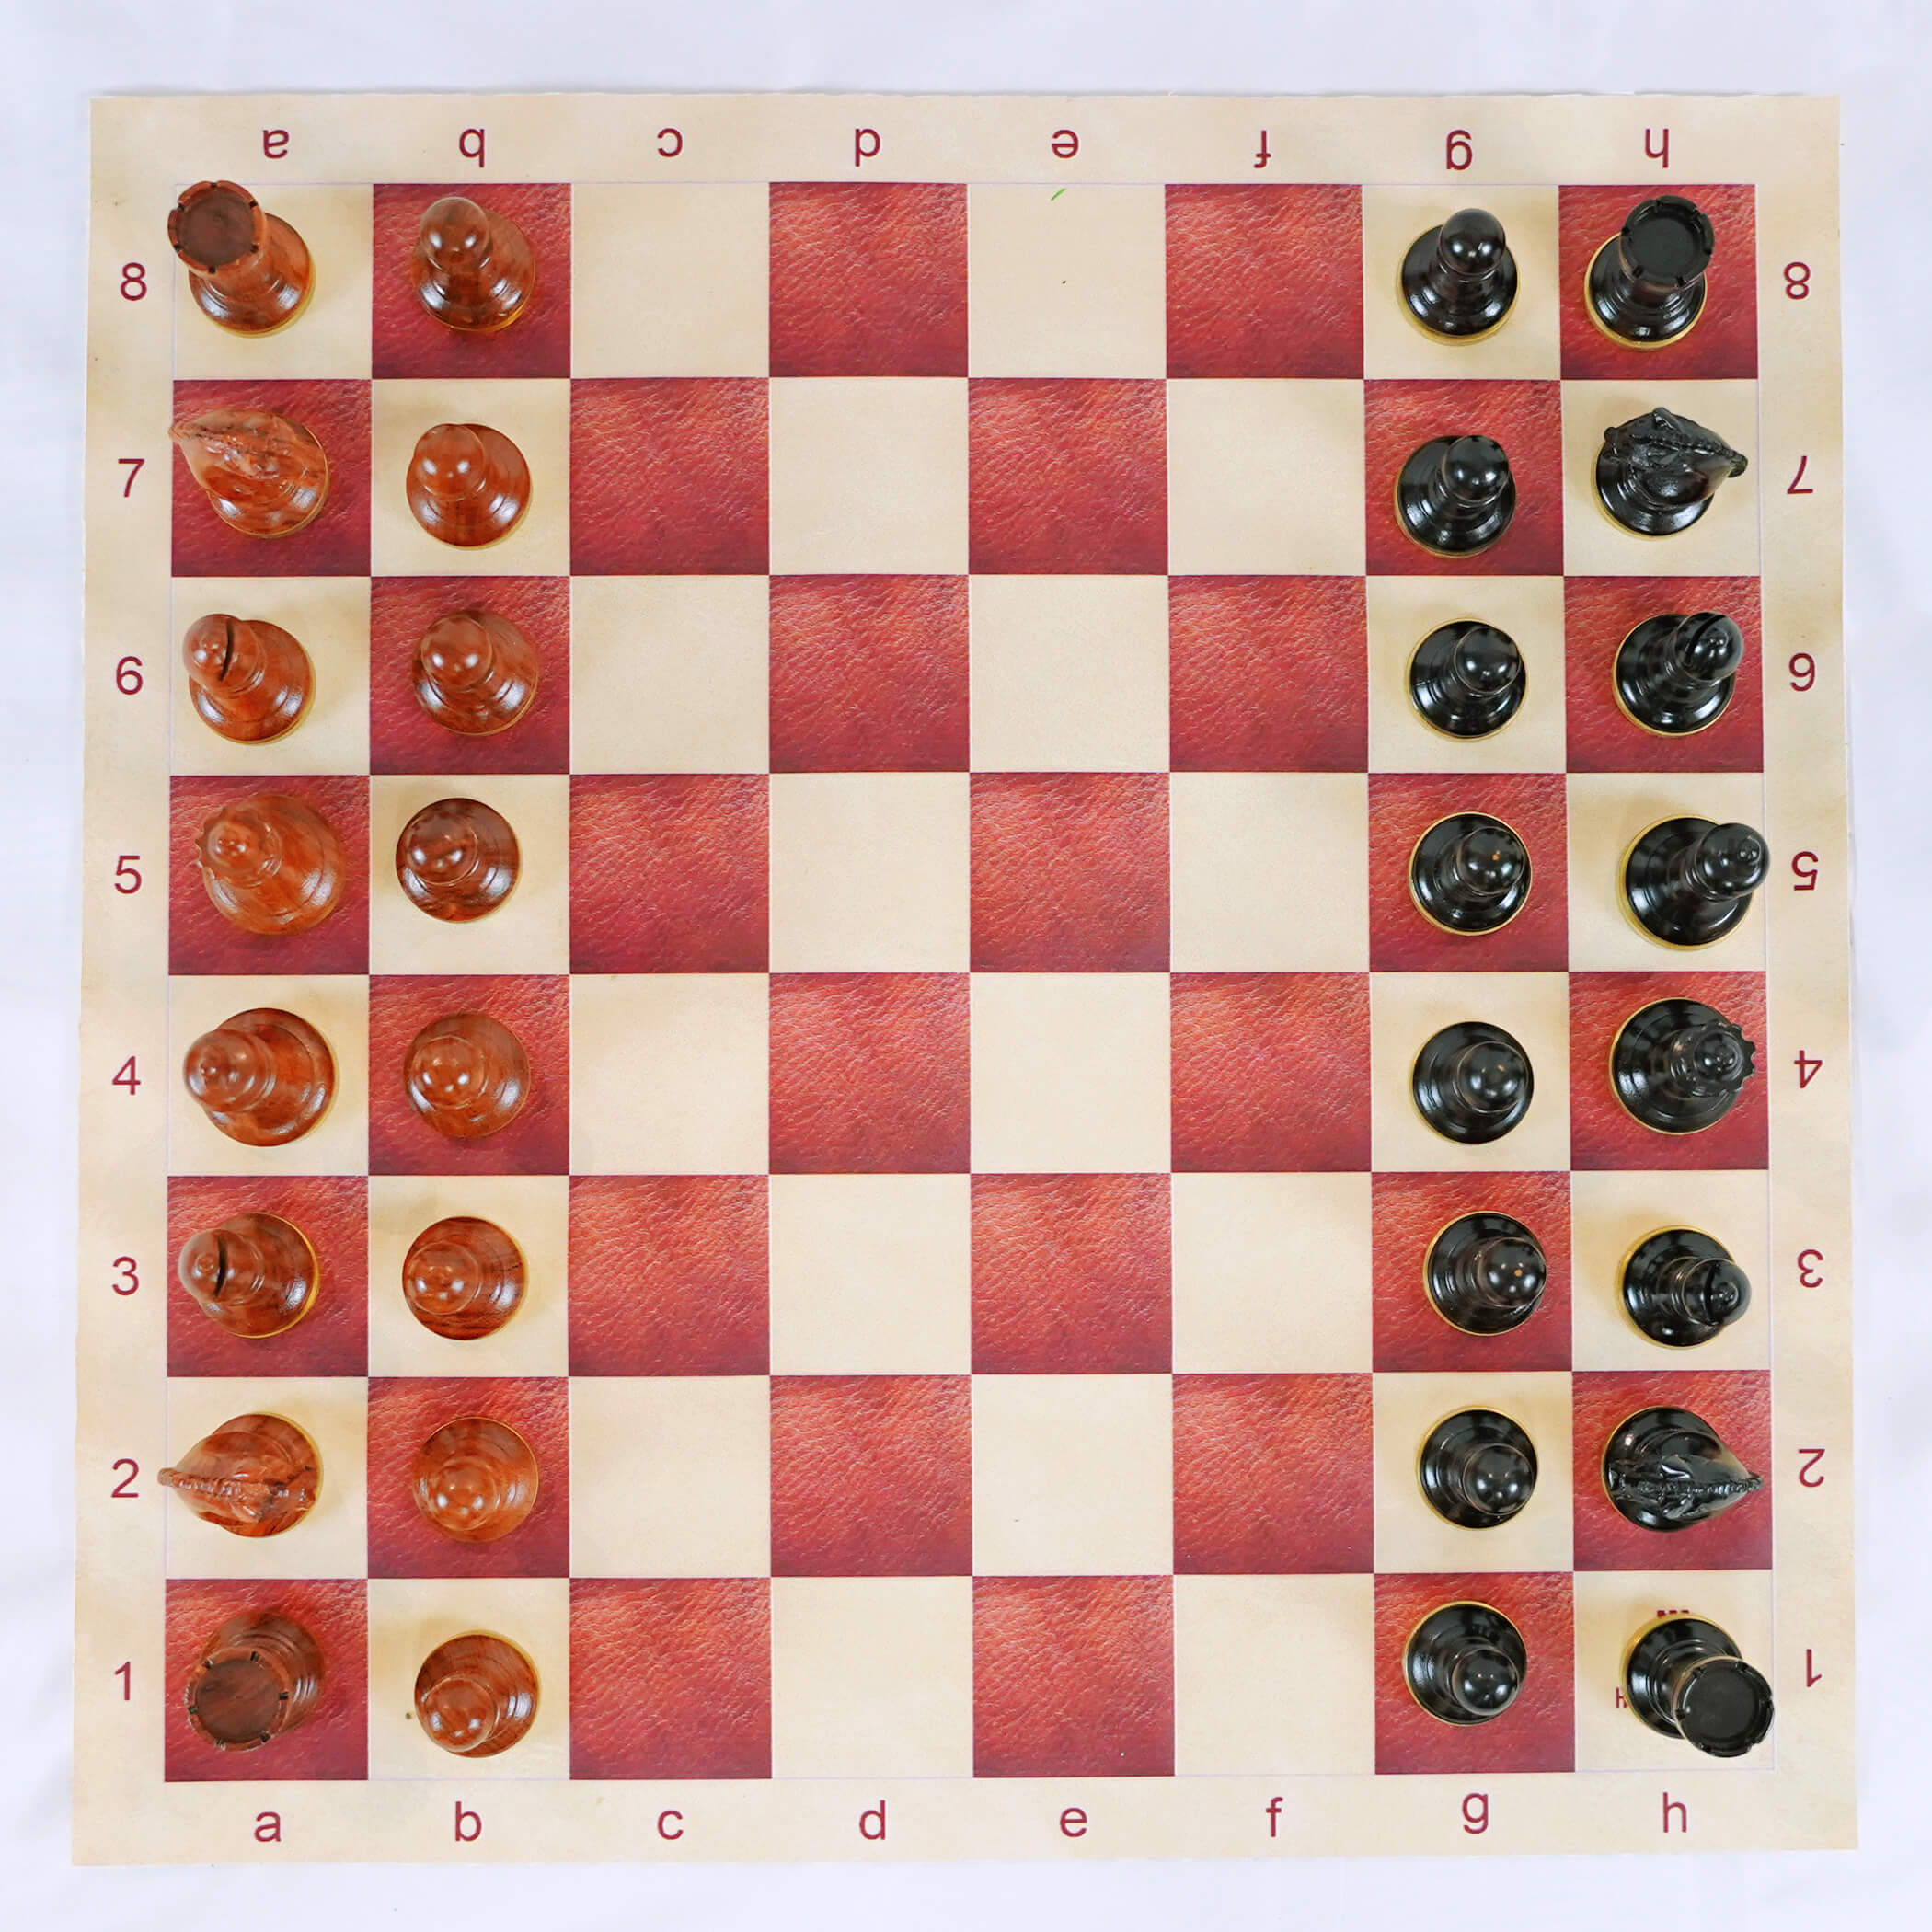 Bàn Cờ Vua, Da Napa, FIDE, cờ 9 ô: Chơi cờ là một hoạt động tuyệt vời để giải trí và rèn luyện trí tuệ. Với bàn cờ Vua hiện đại được làm bằng da Napa và chứng nhận từ FIDE, bạn sẽ có trải nghiệm tốt nhất. Cùng với cờ 9 ô truyền thống, bạn sẽ thấy một thế giới hoàn toàn mới của trò chơi cổ điển này. Hãy trở thành bậc thầy của bàn cờ Vua và cờ 9 ô trong trò chơi đầy kinh nghiệm này!